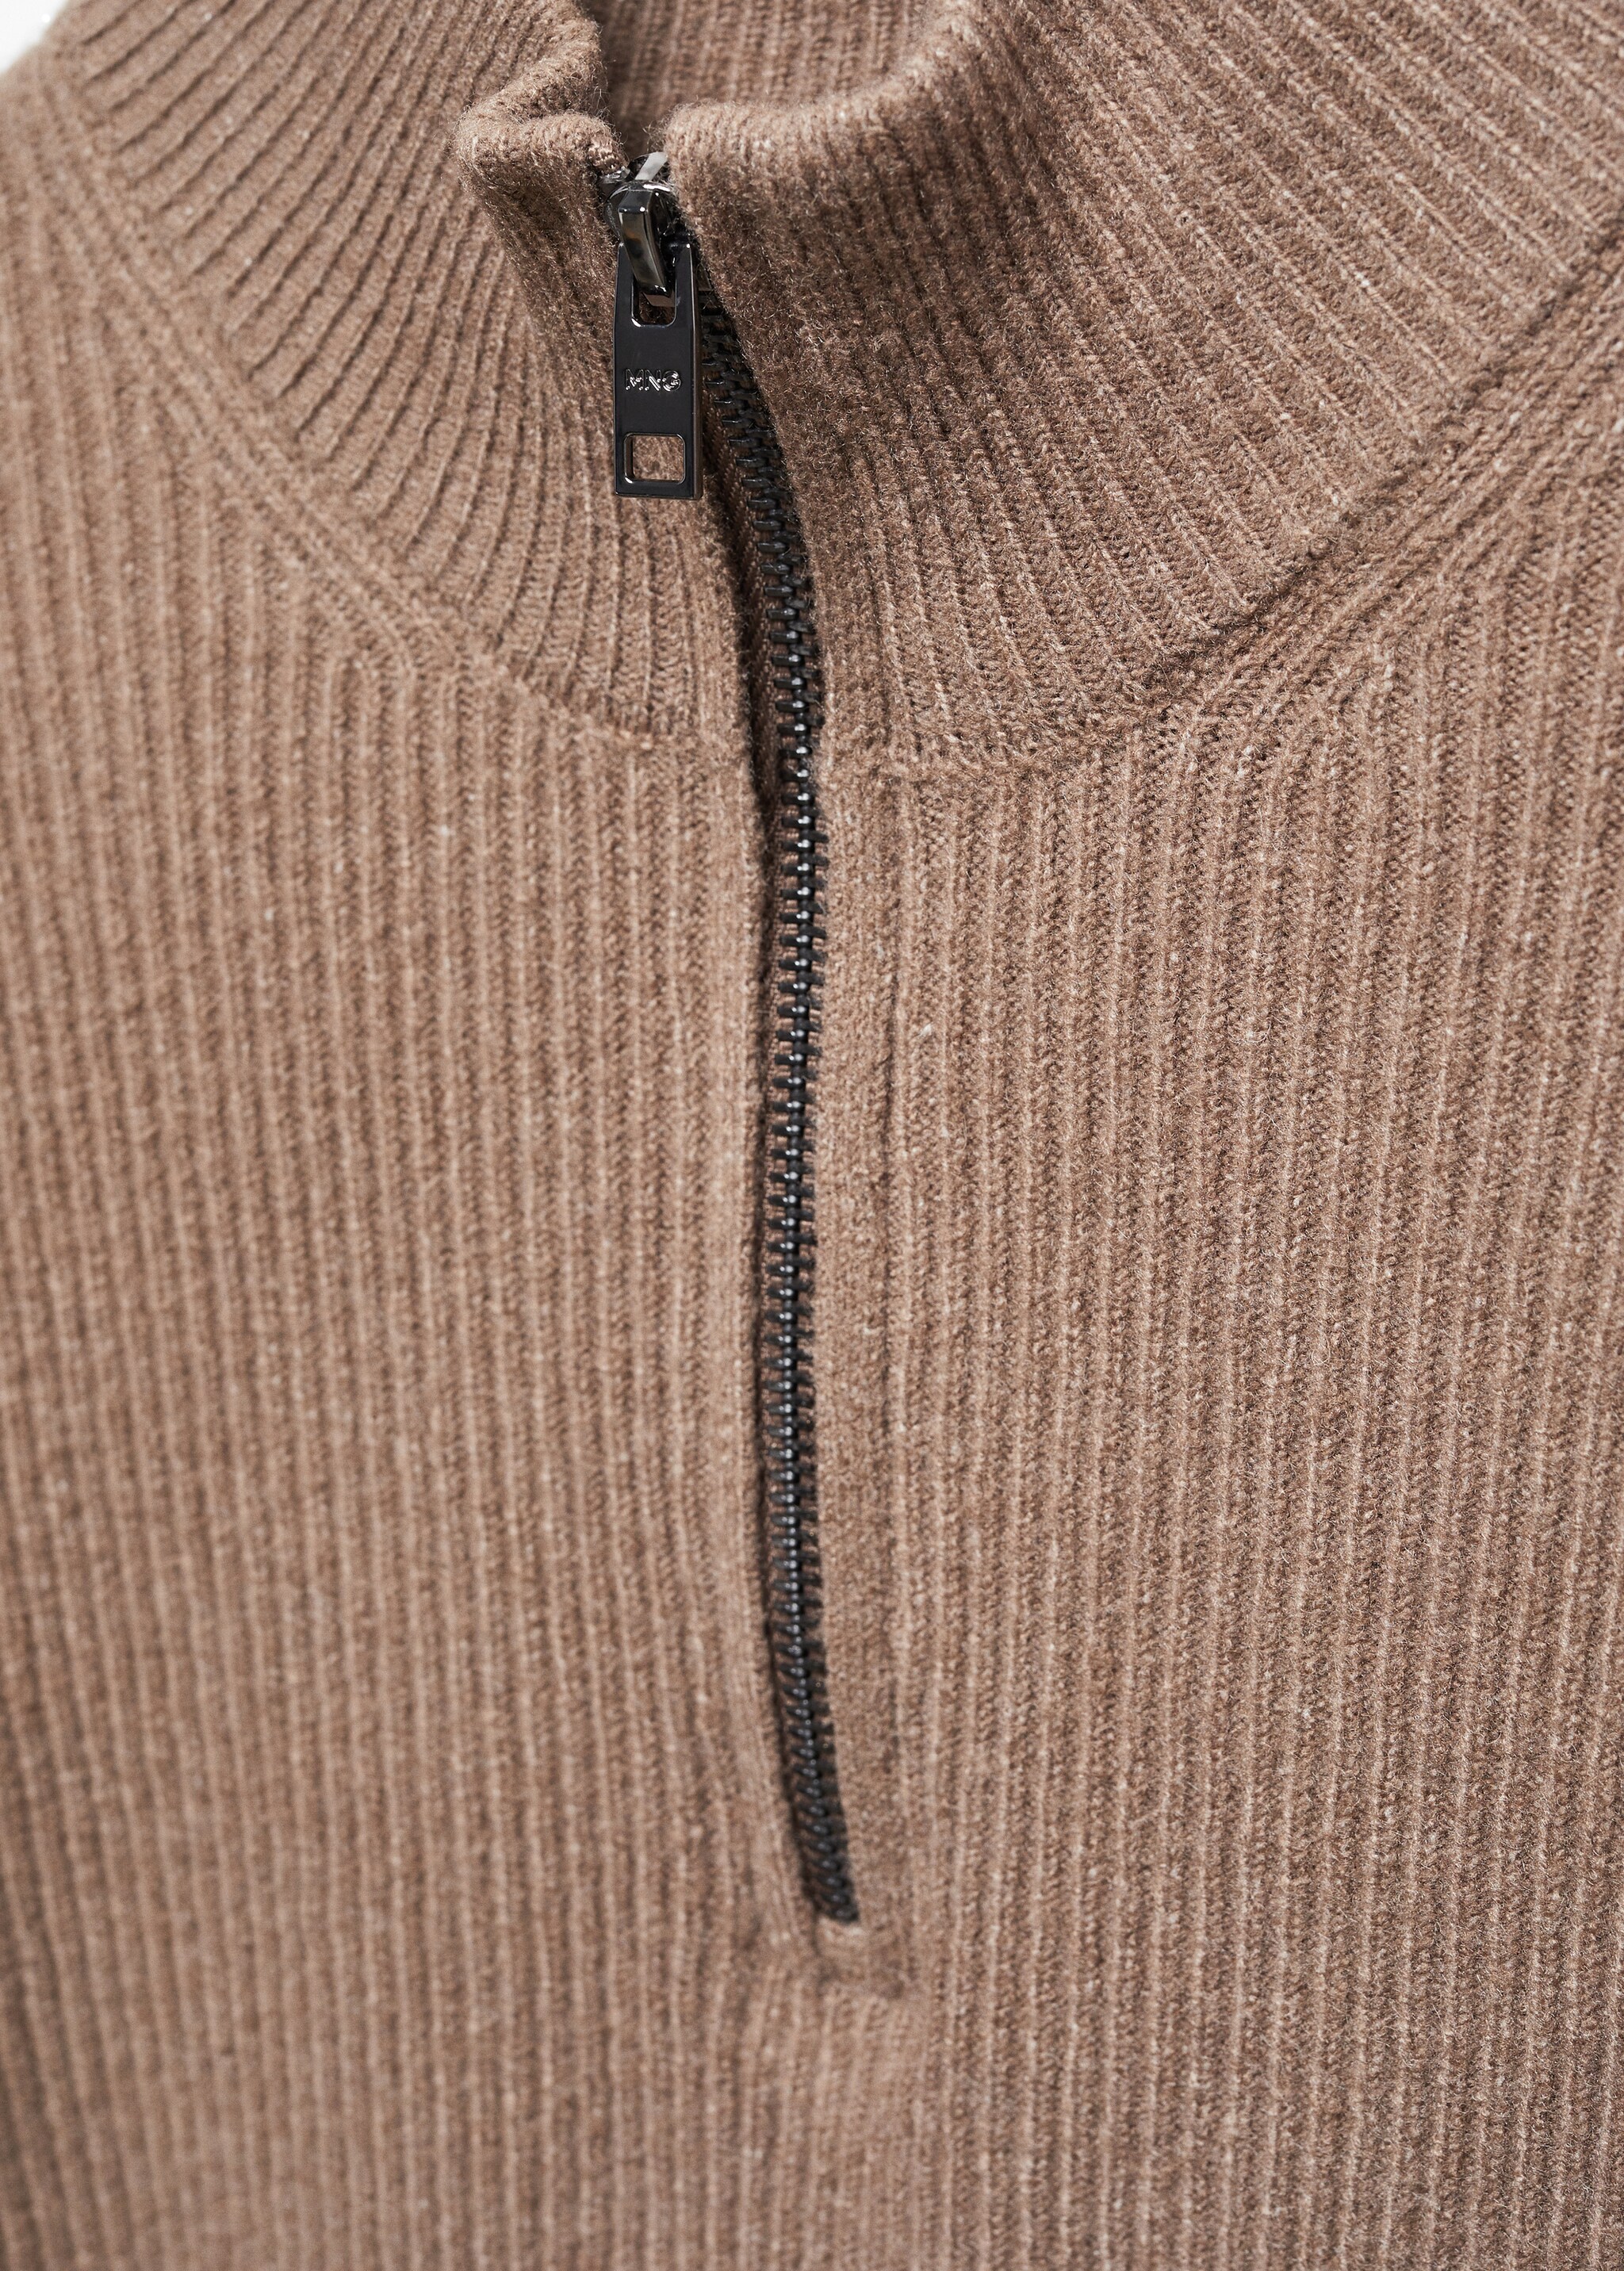 Gerippter Pullover mit Reißverschluss - Detail des Artikels 8